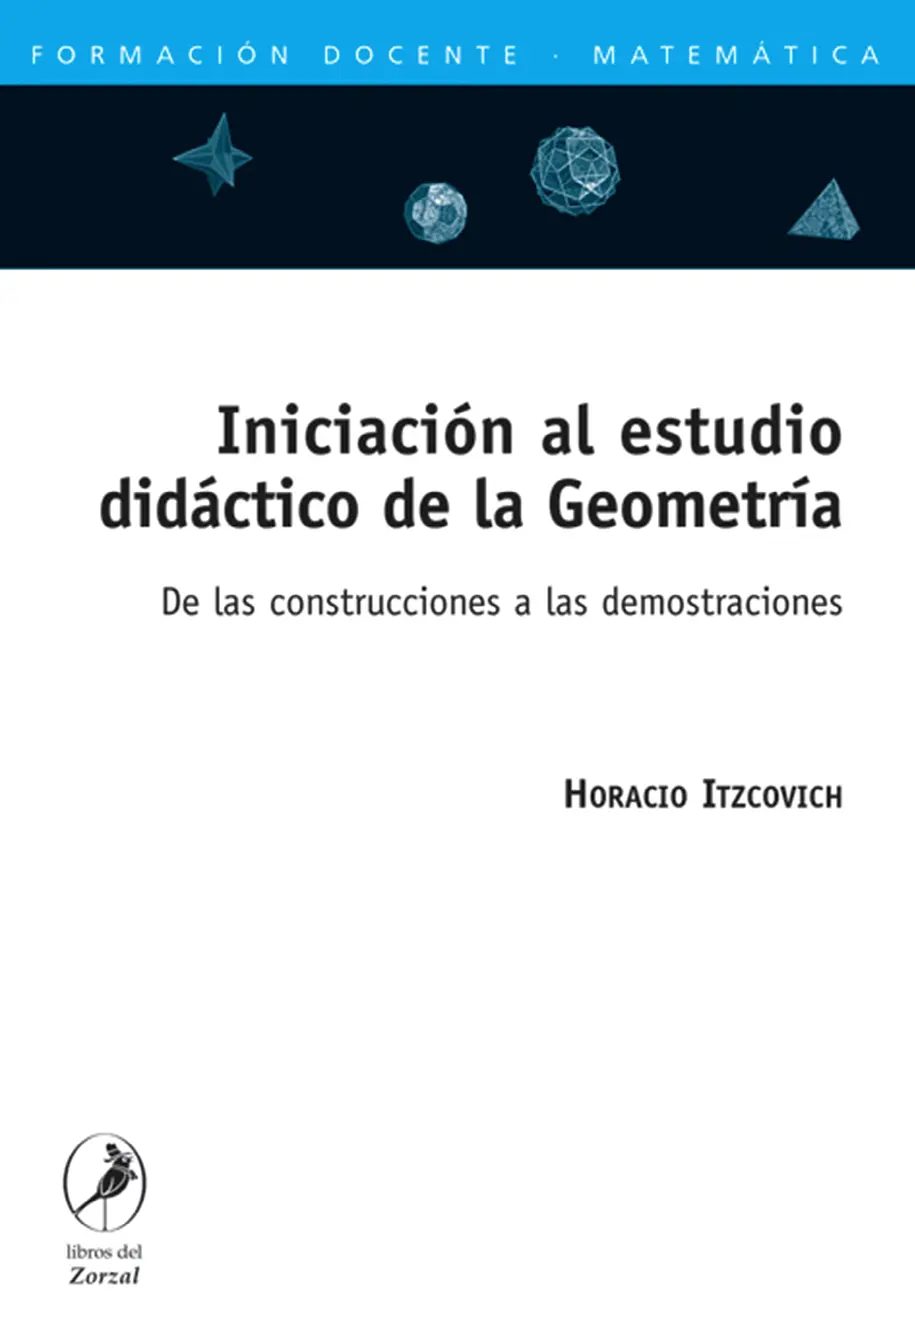 Horacio Itzcovich Iniciación al estudio didáctico de la Geometría De las - фото 1